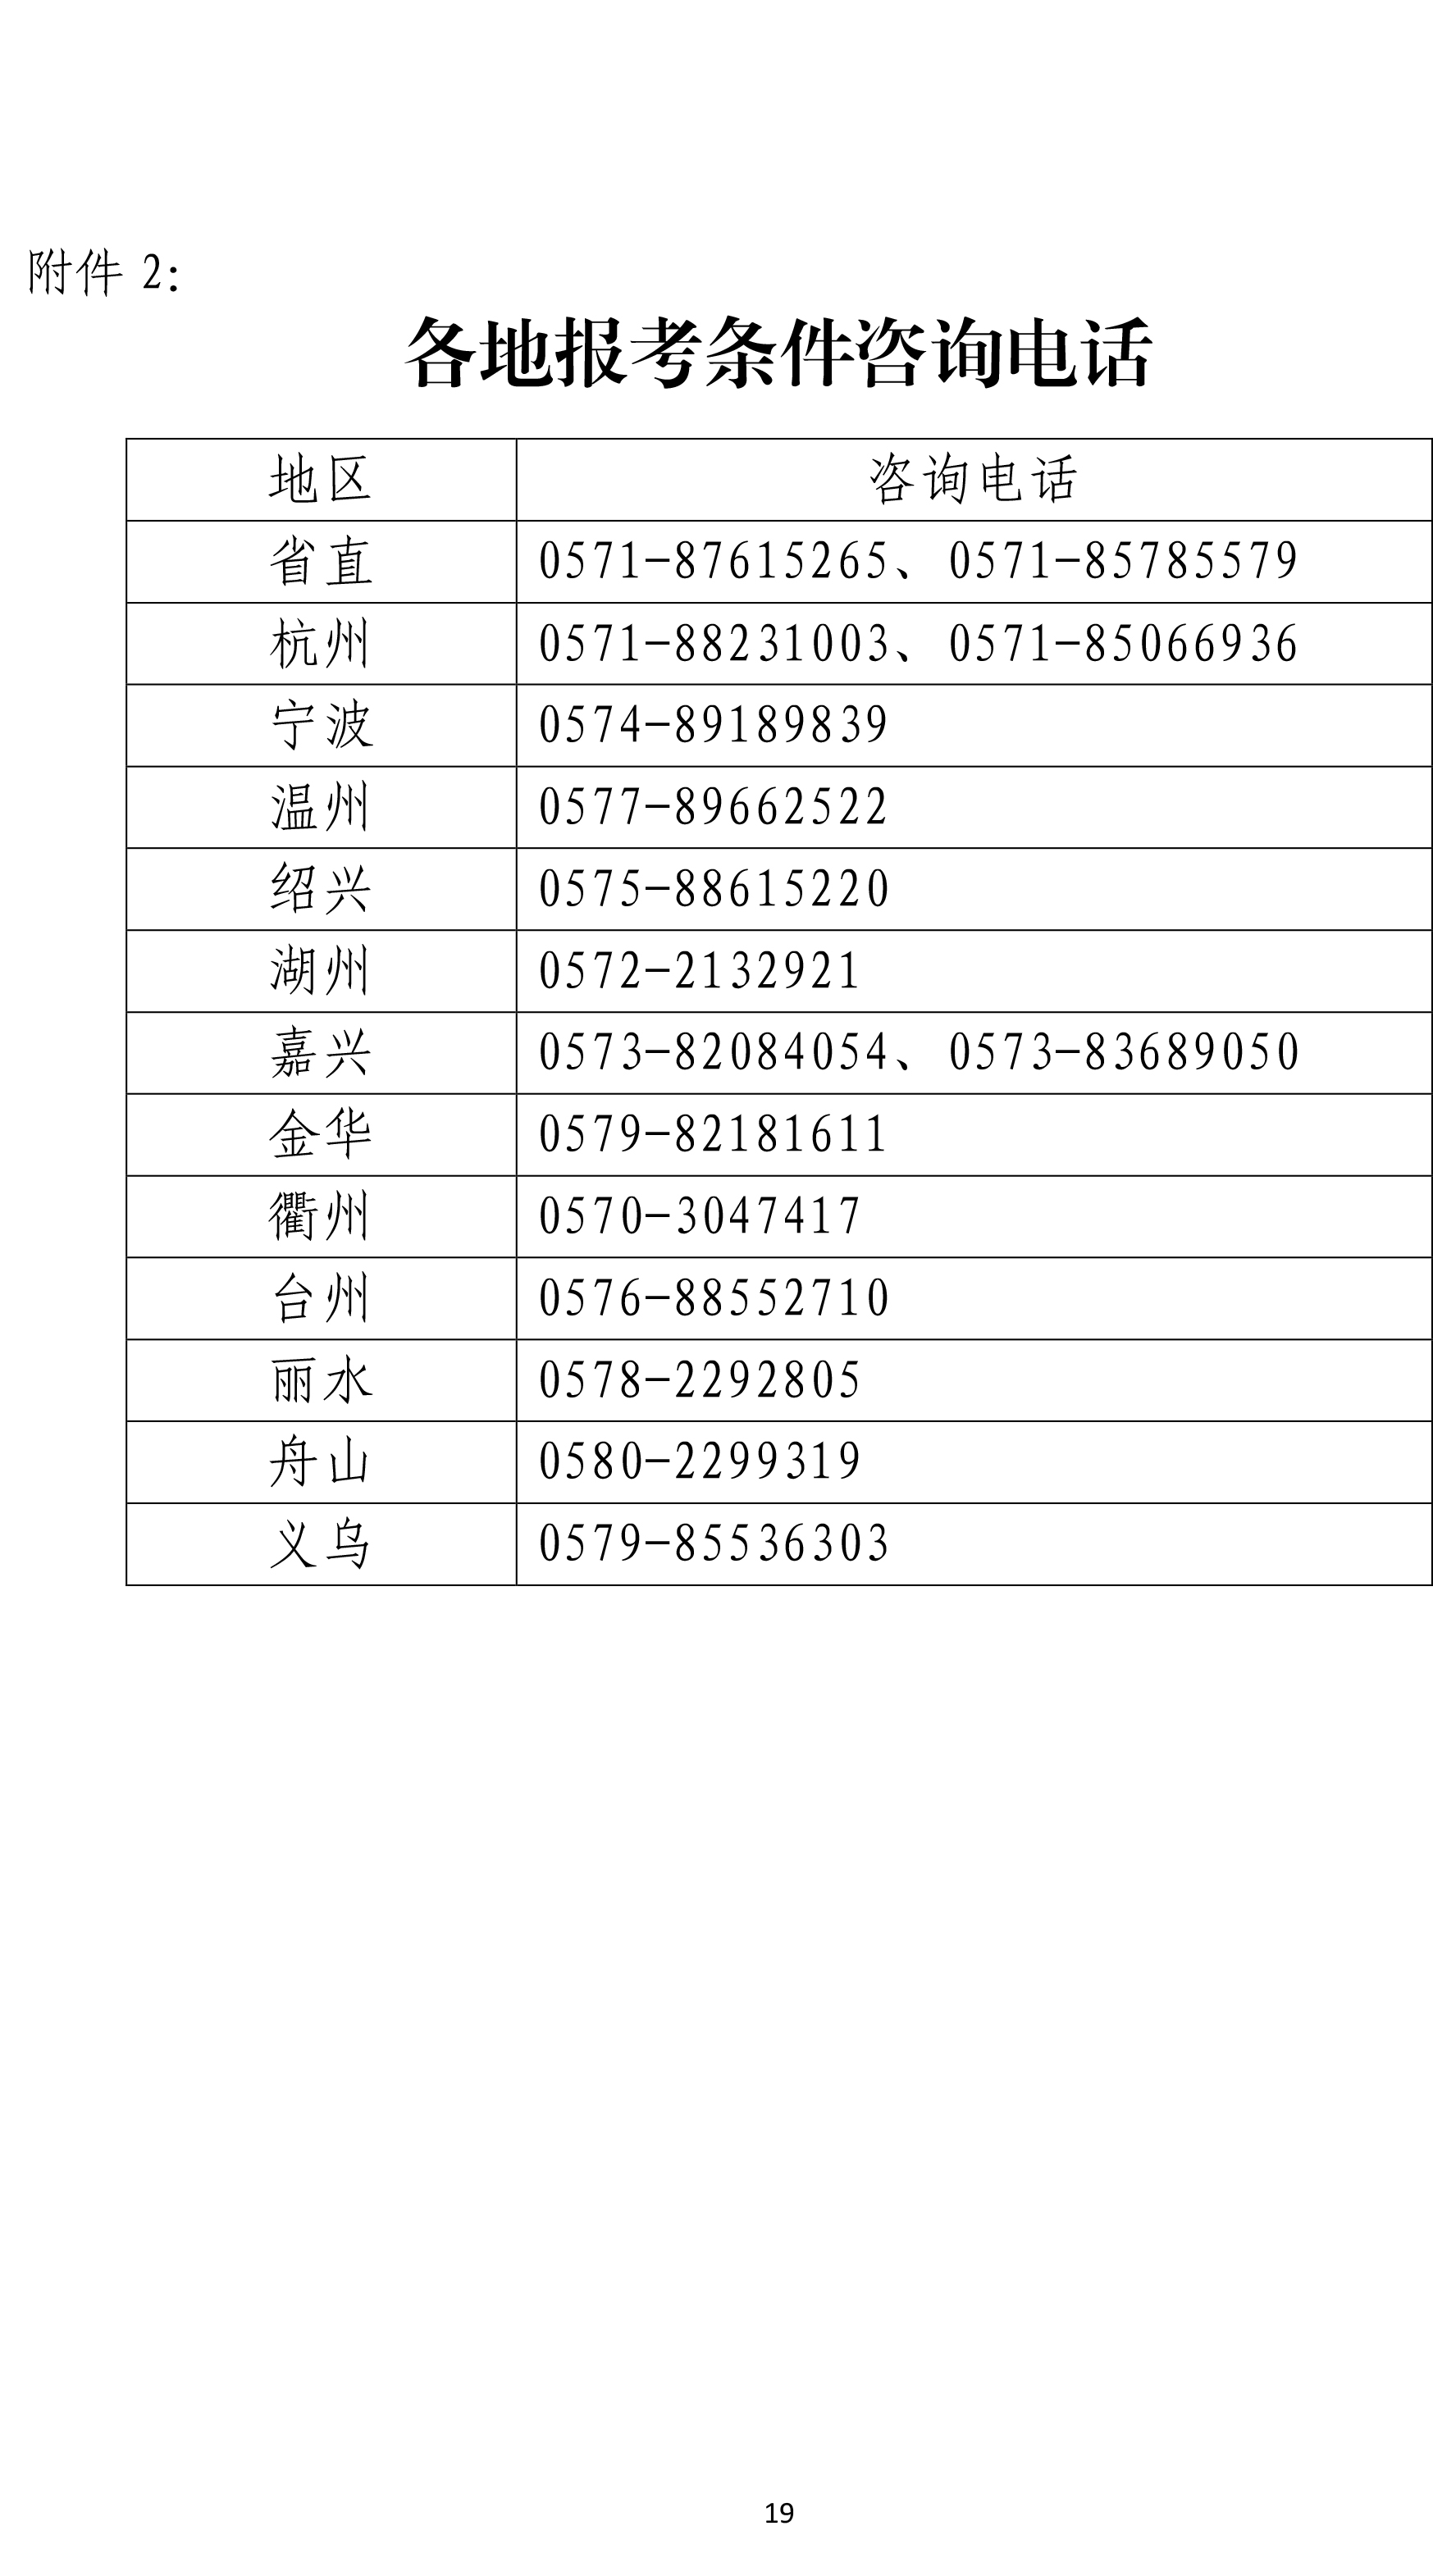 浙江省2019年度执业药师资格考试考务通知